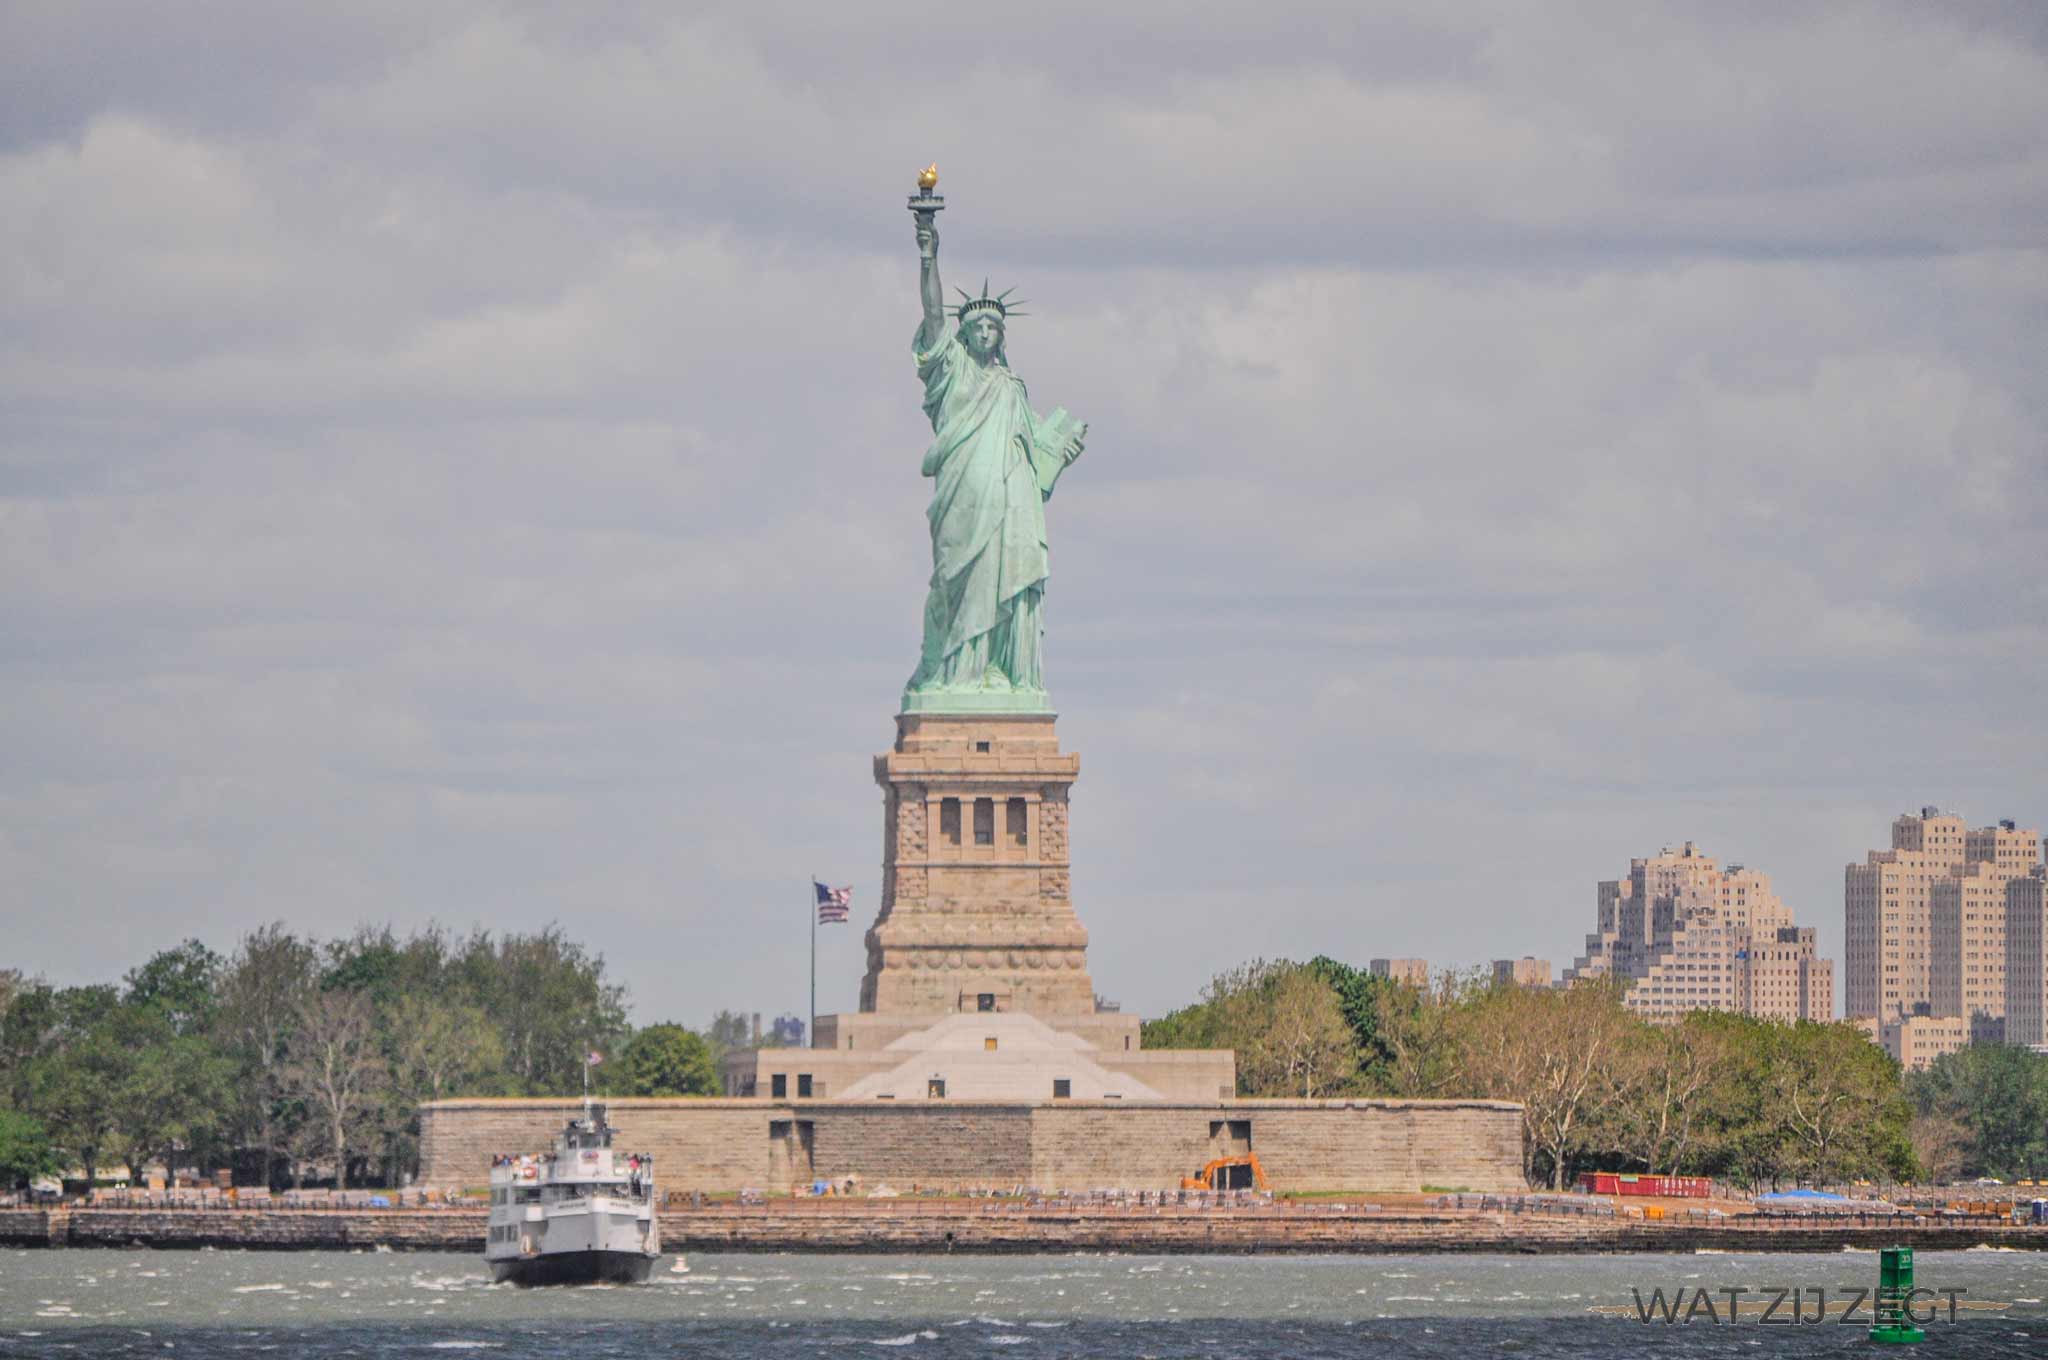 Mam Verlichting draai Gratis doen in New York: budget tips New York | WAT ZIJ ZEGT